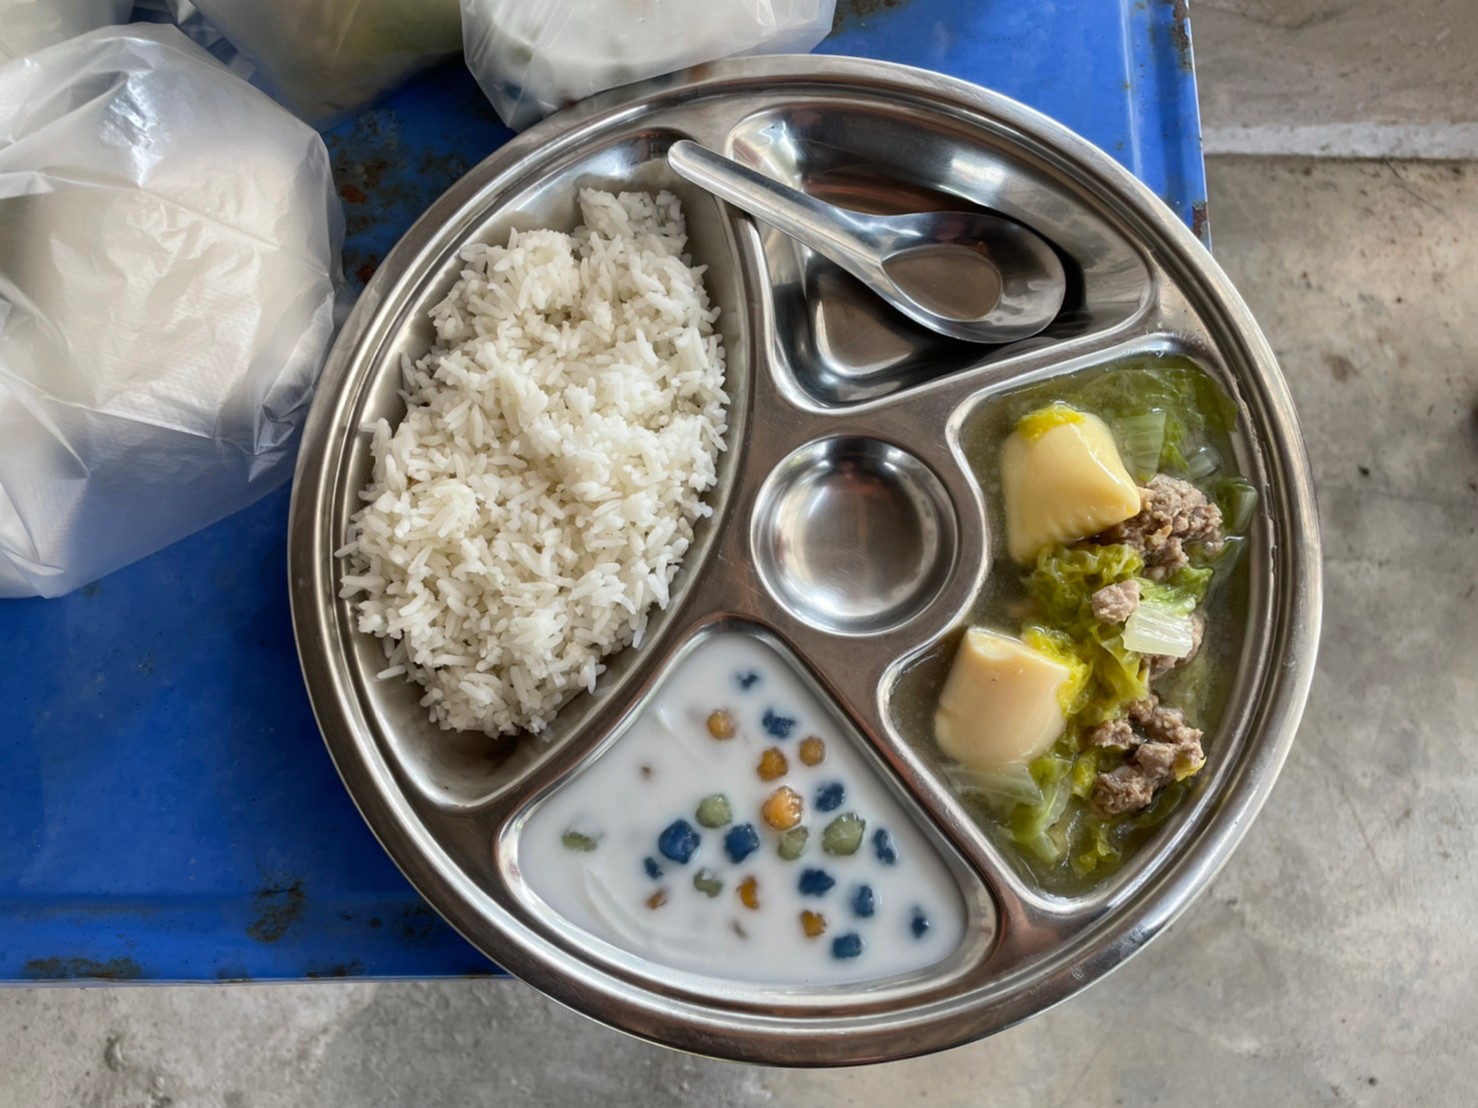 จัดทำอาหารกลางวันสำหรับเด็กใน ศพด. ในช่วงสถานการณ์การแพร่ระบาดของโรคติดเชื้อไวรัสโคโรนา 2019